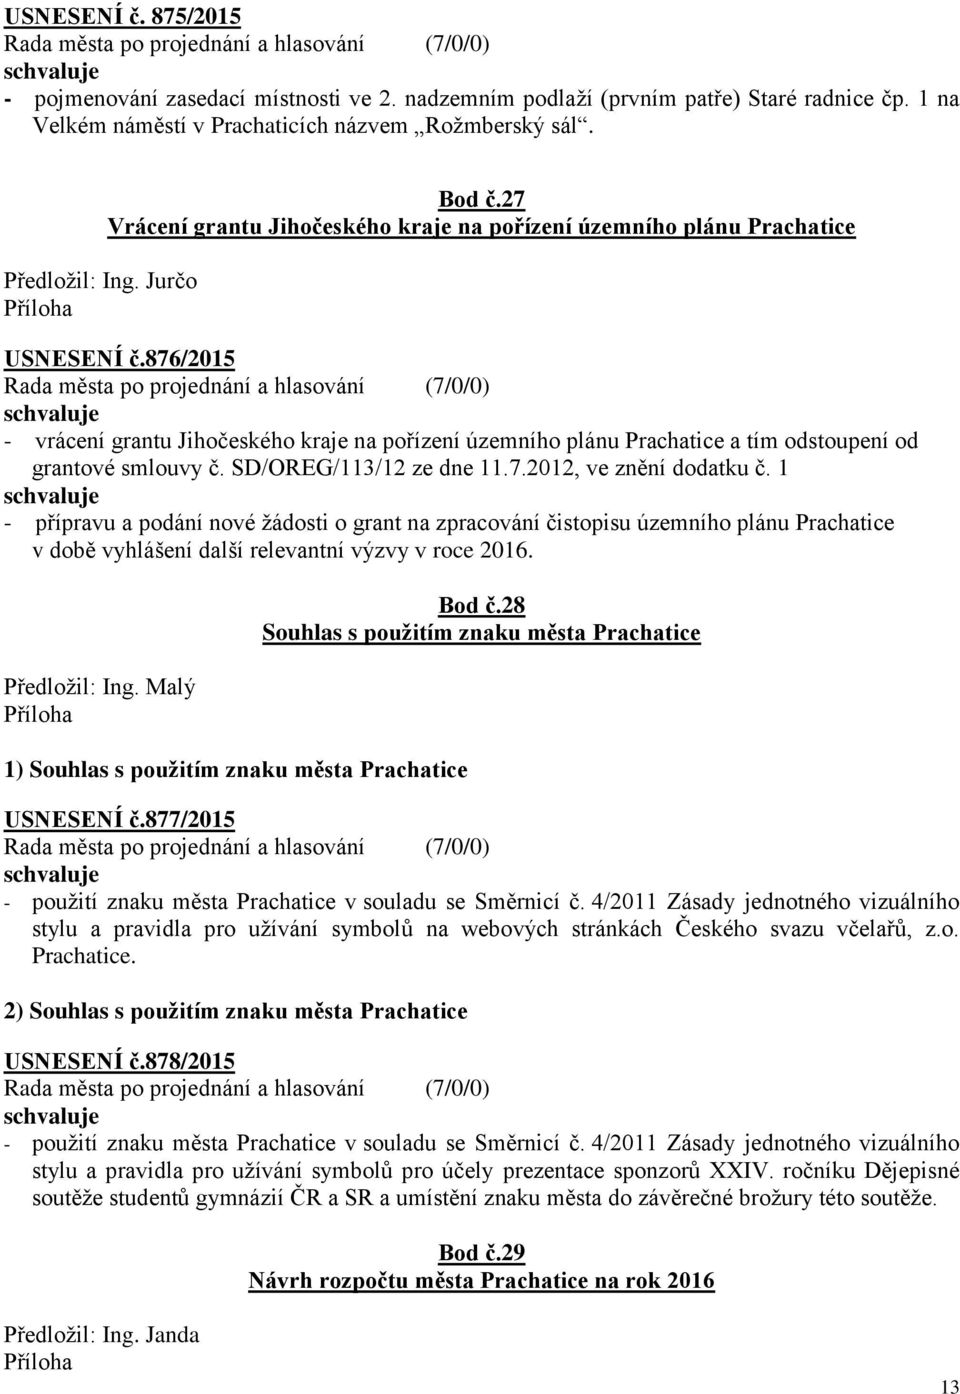 876/2015 - vrácení grantu Jihočeského kraje na pořízení územního plánu Prachatice a tím odstoupení od grantové smlouvy č. SD/OREG/113/12 ze dne 11.7.2012, ve znění dodatku č.